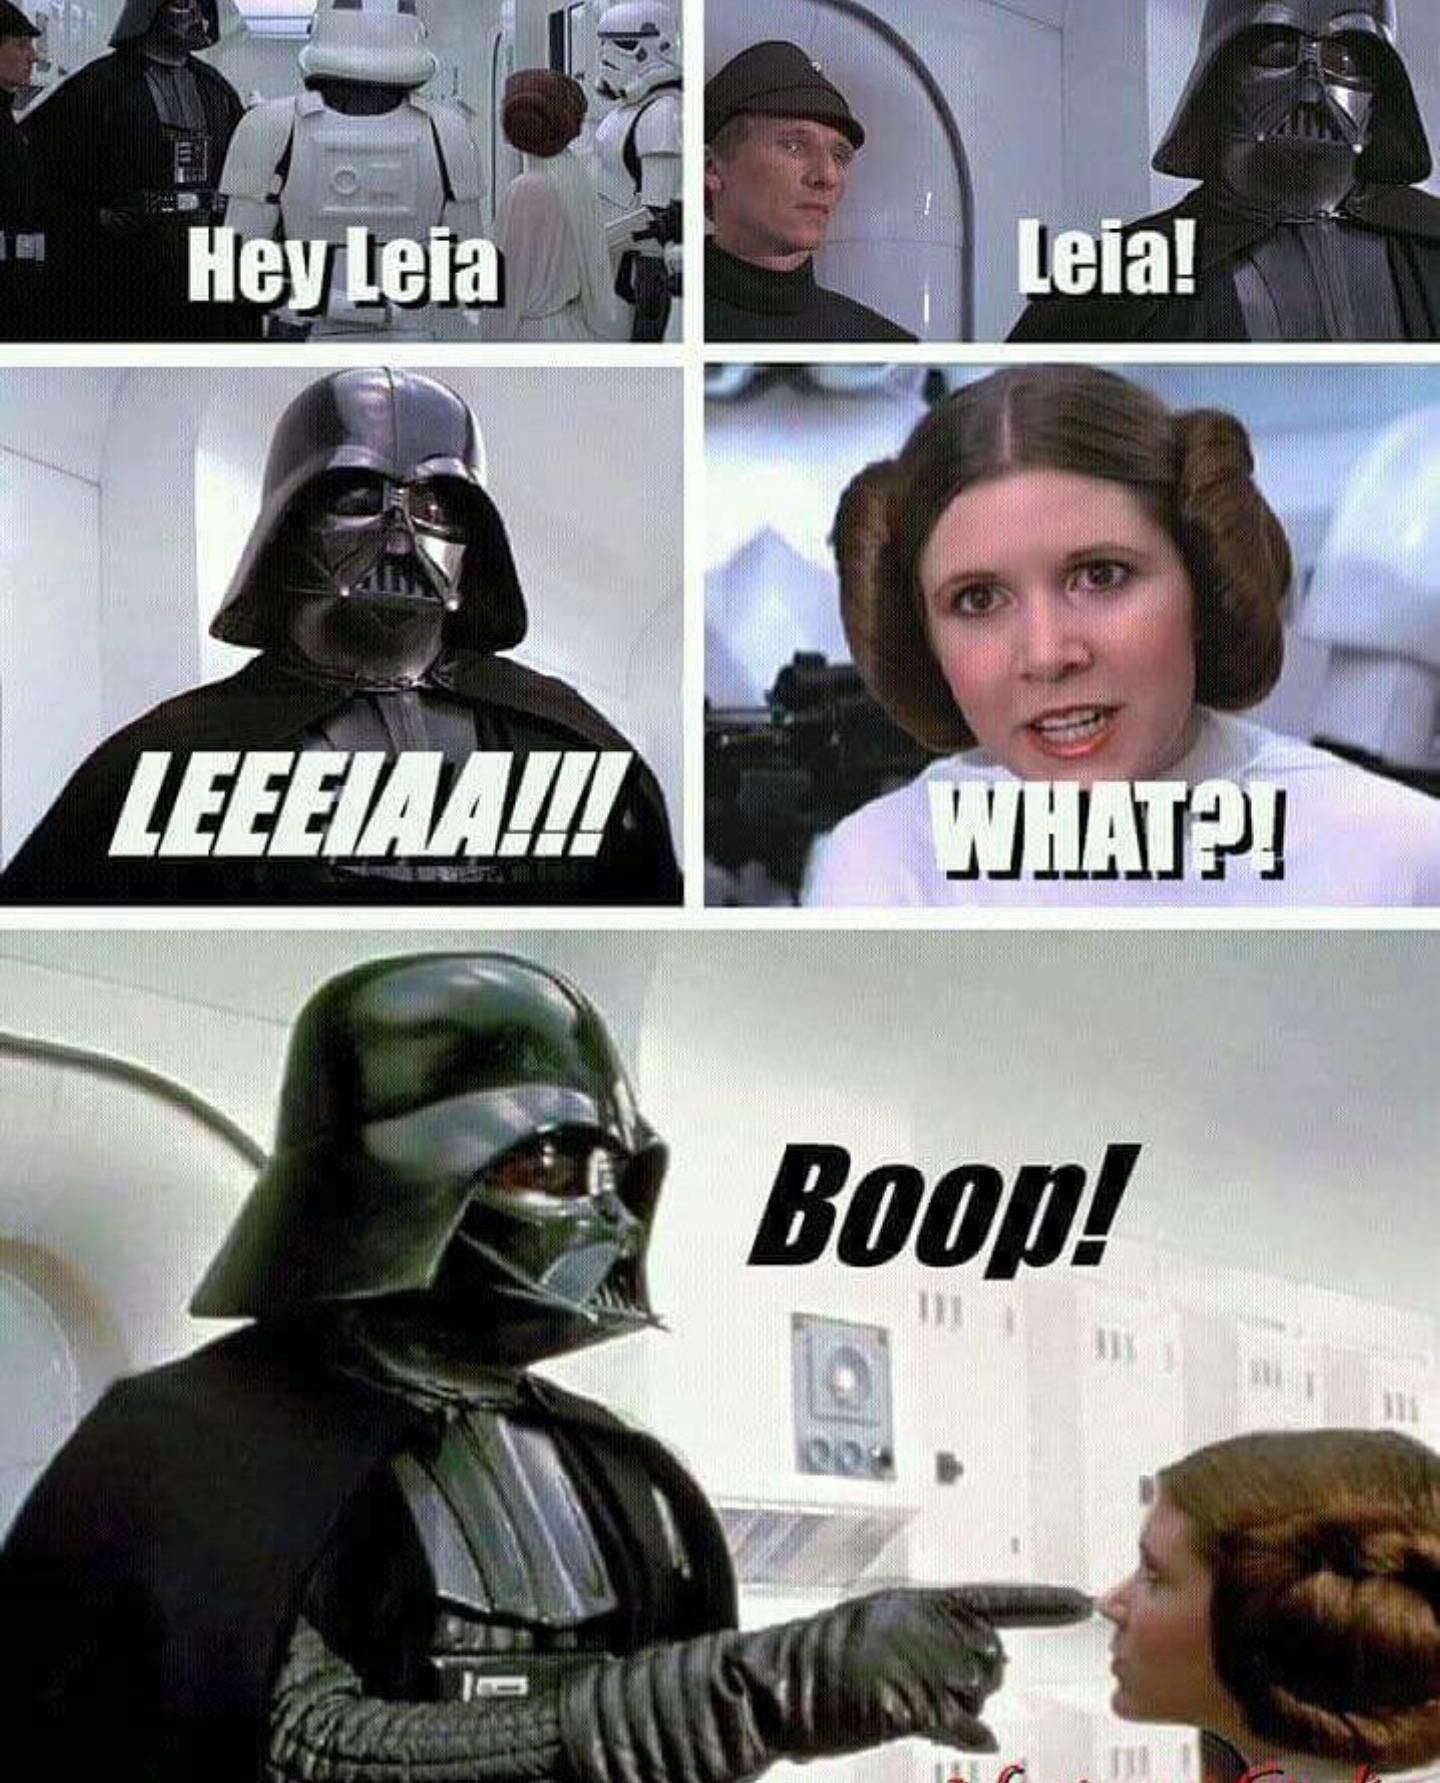 Hey Leia !